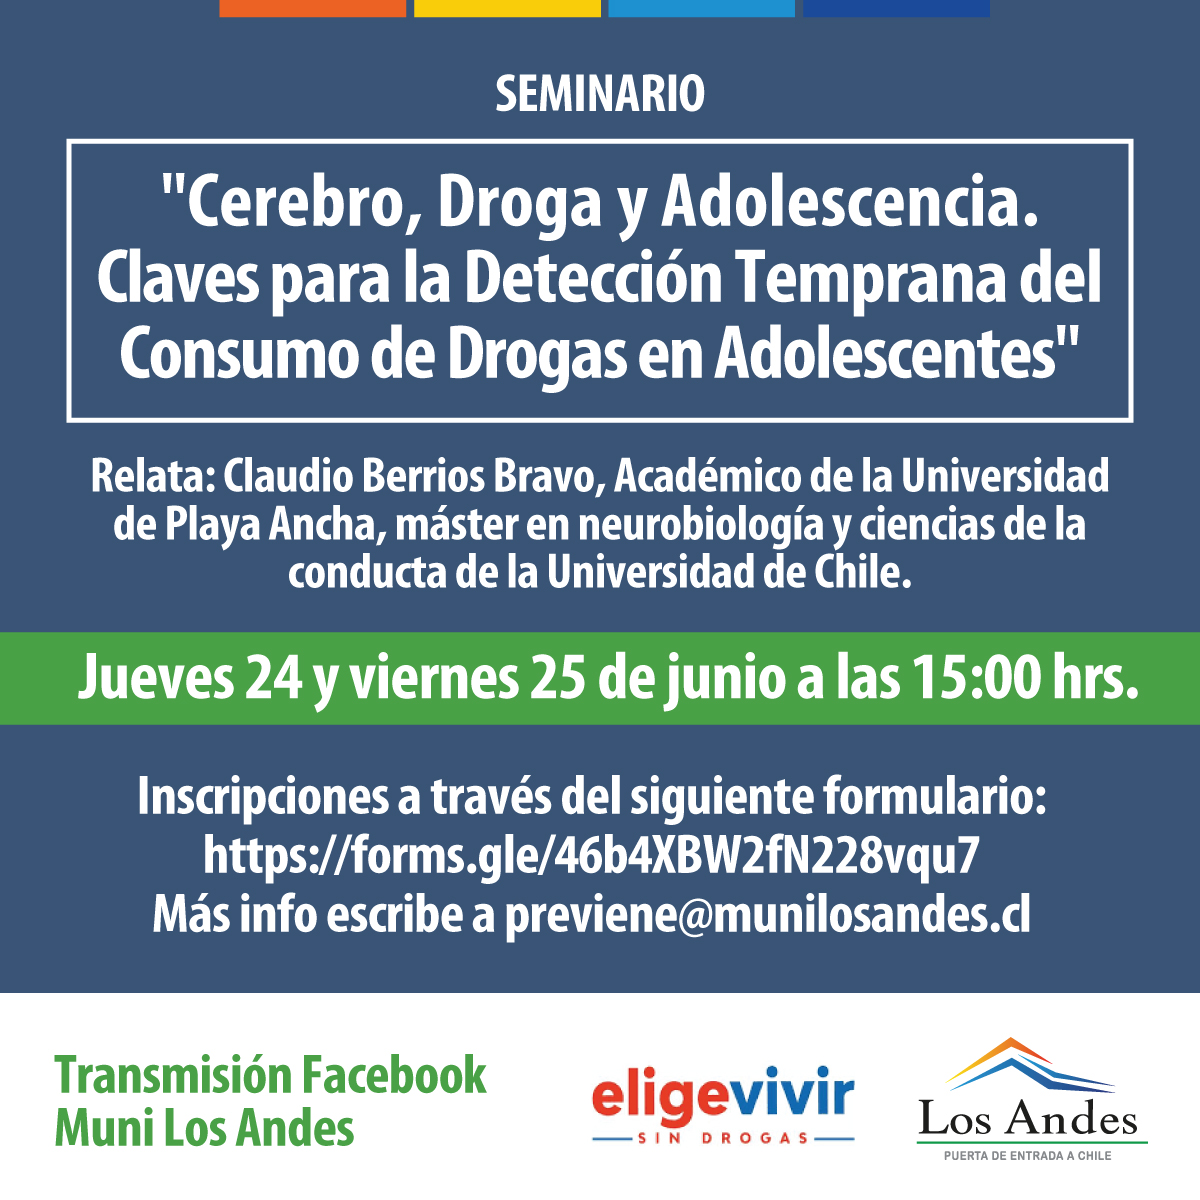 LOS ANDES: Invitan a seminario gratuito sobre efectos de drogas y alcohol en el cerebro